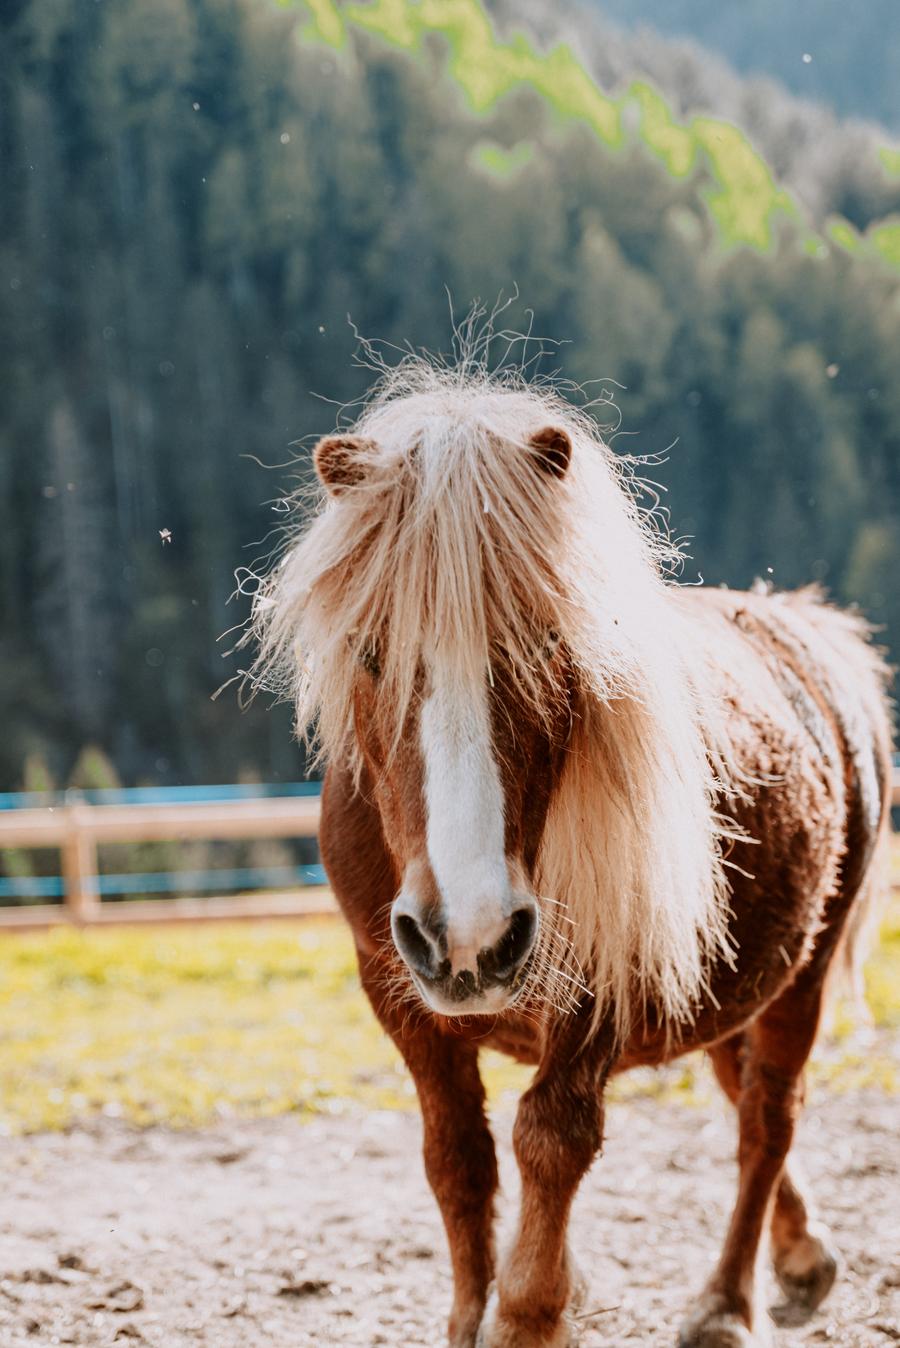 Pretty Pony